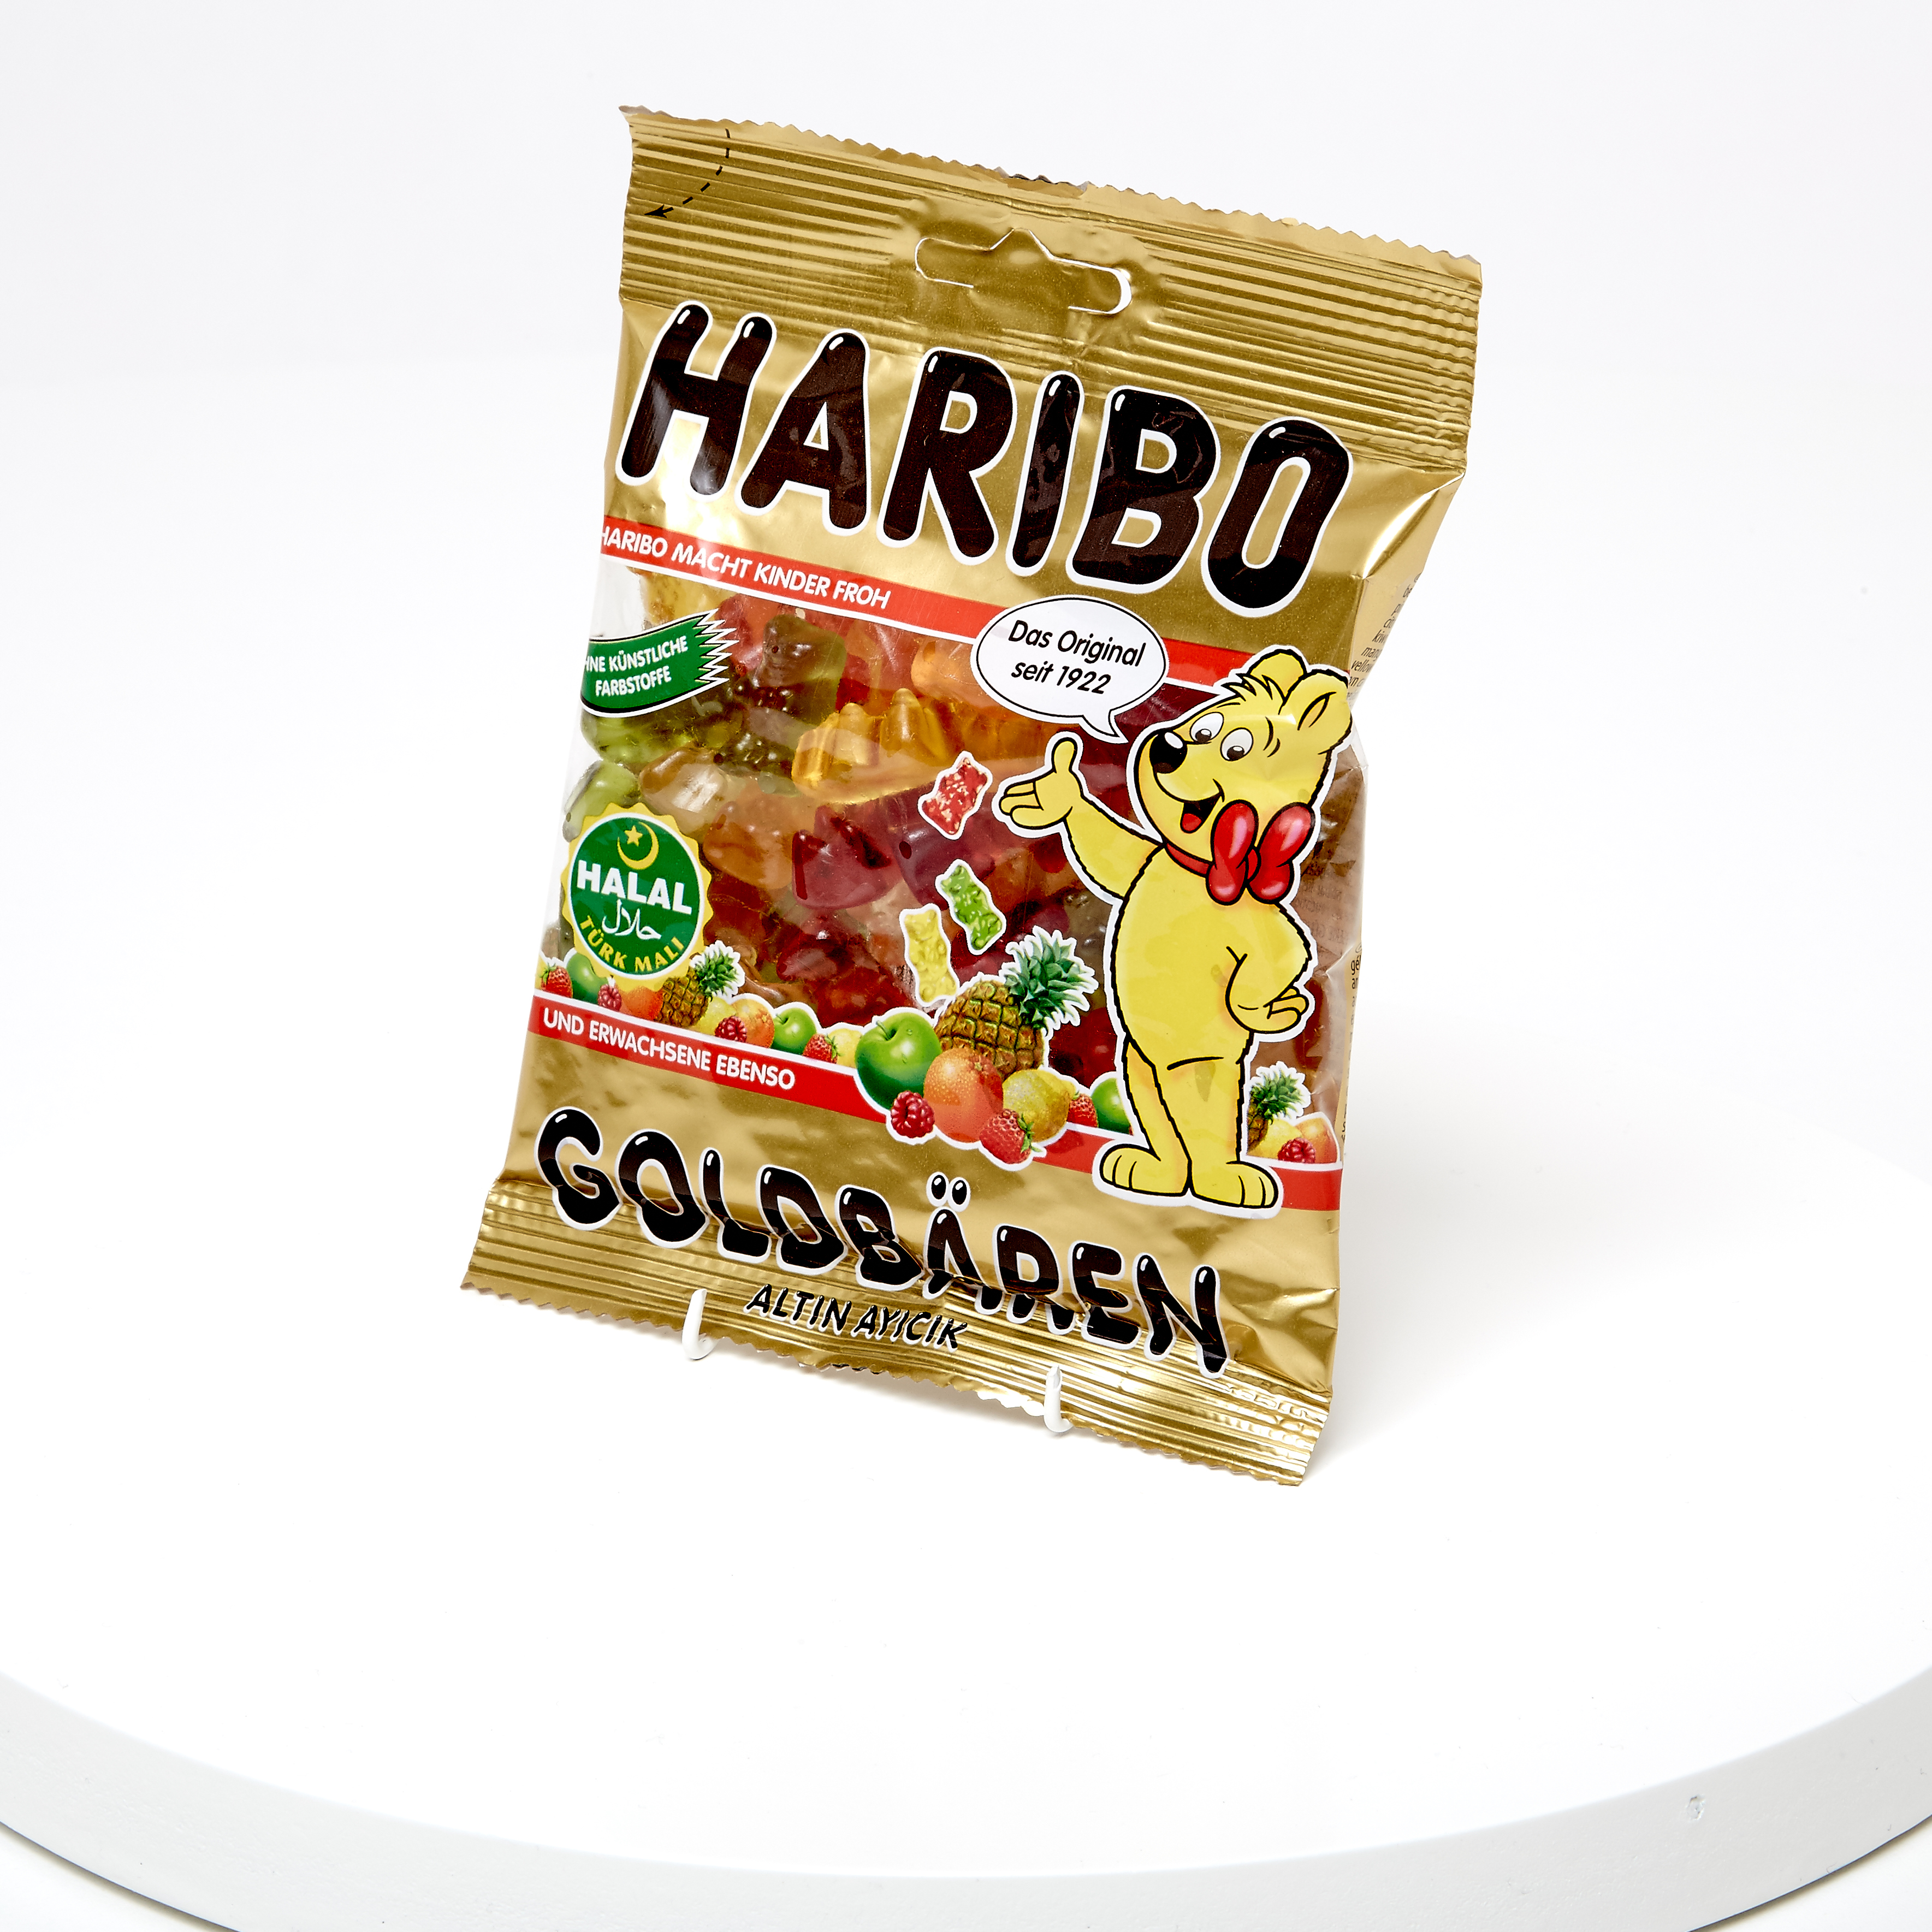 Packet of halal sweets, Haribo